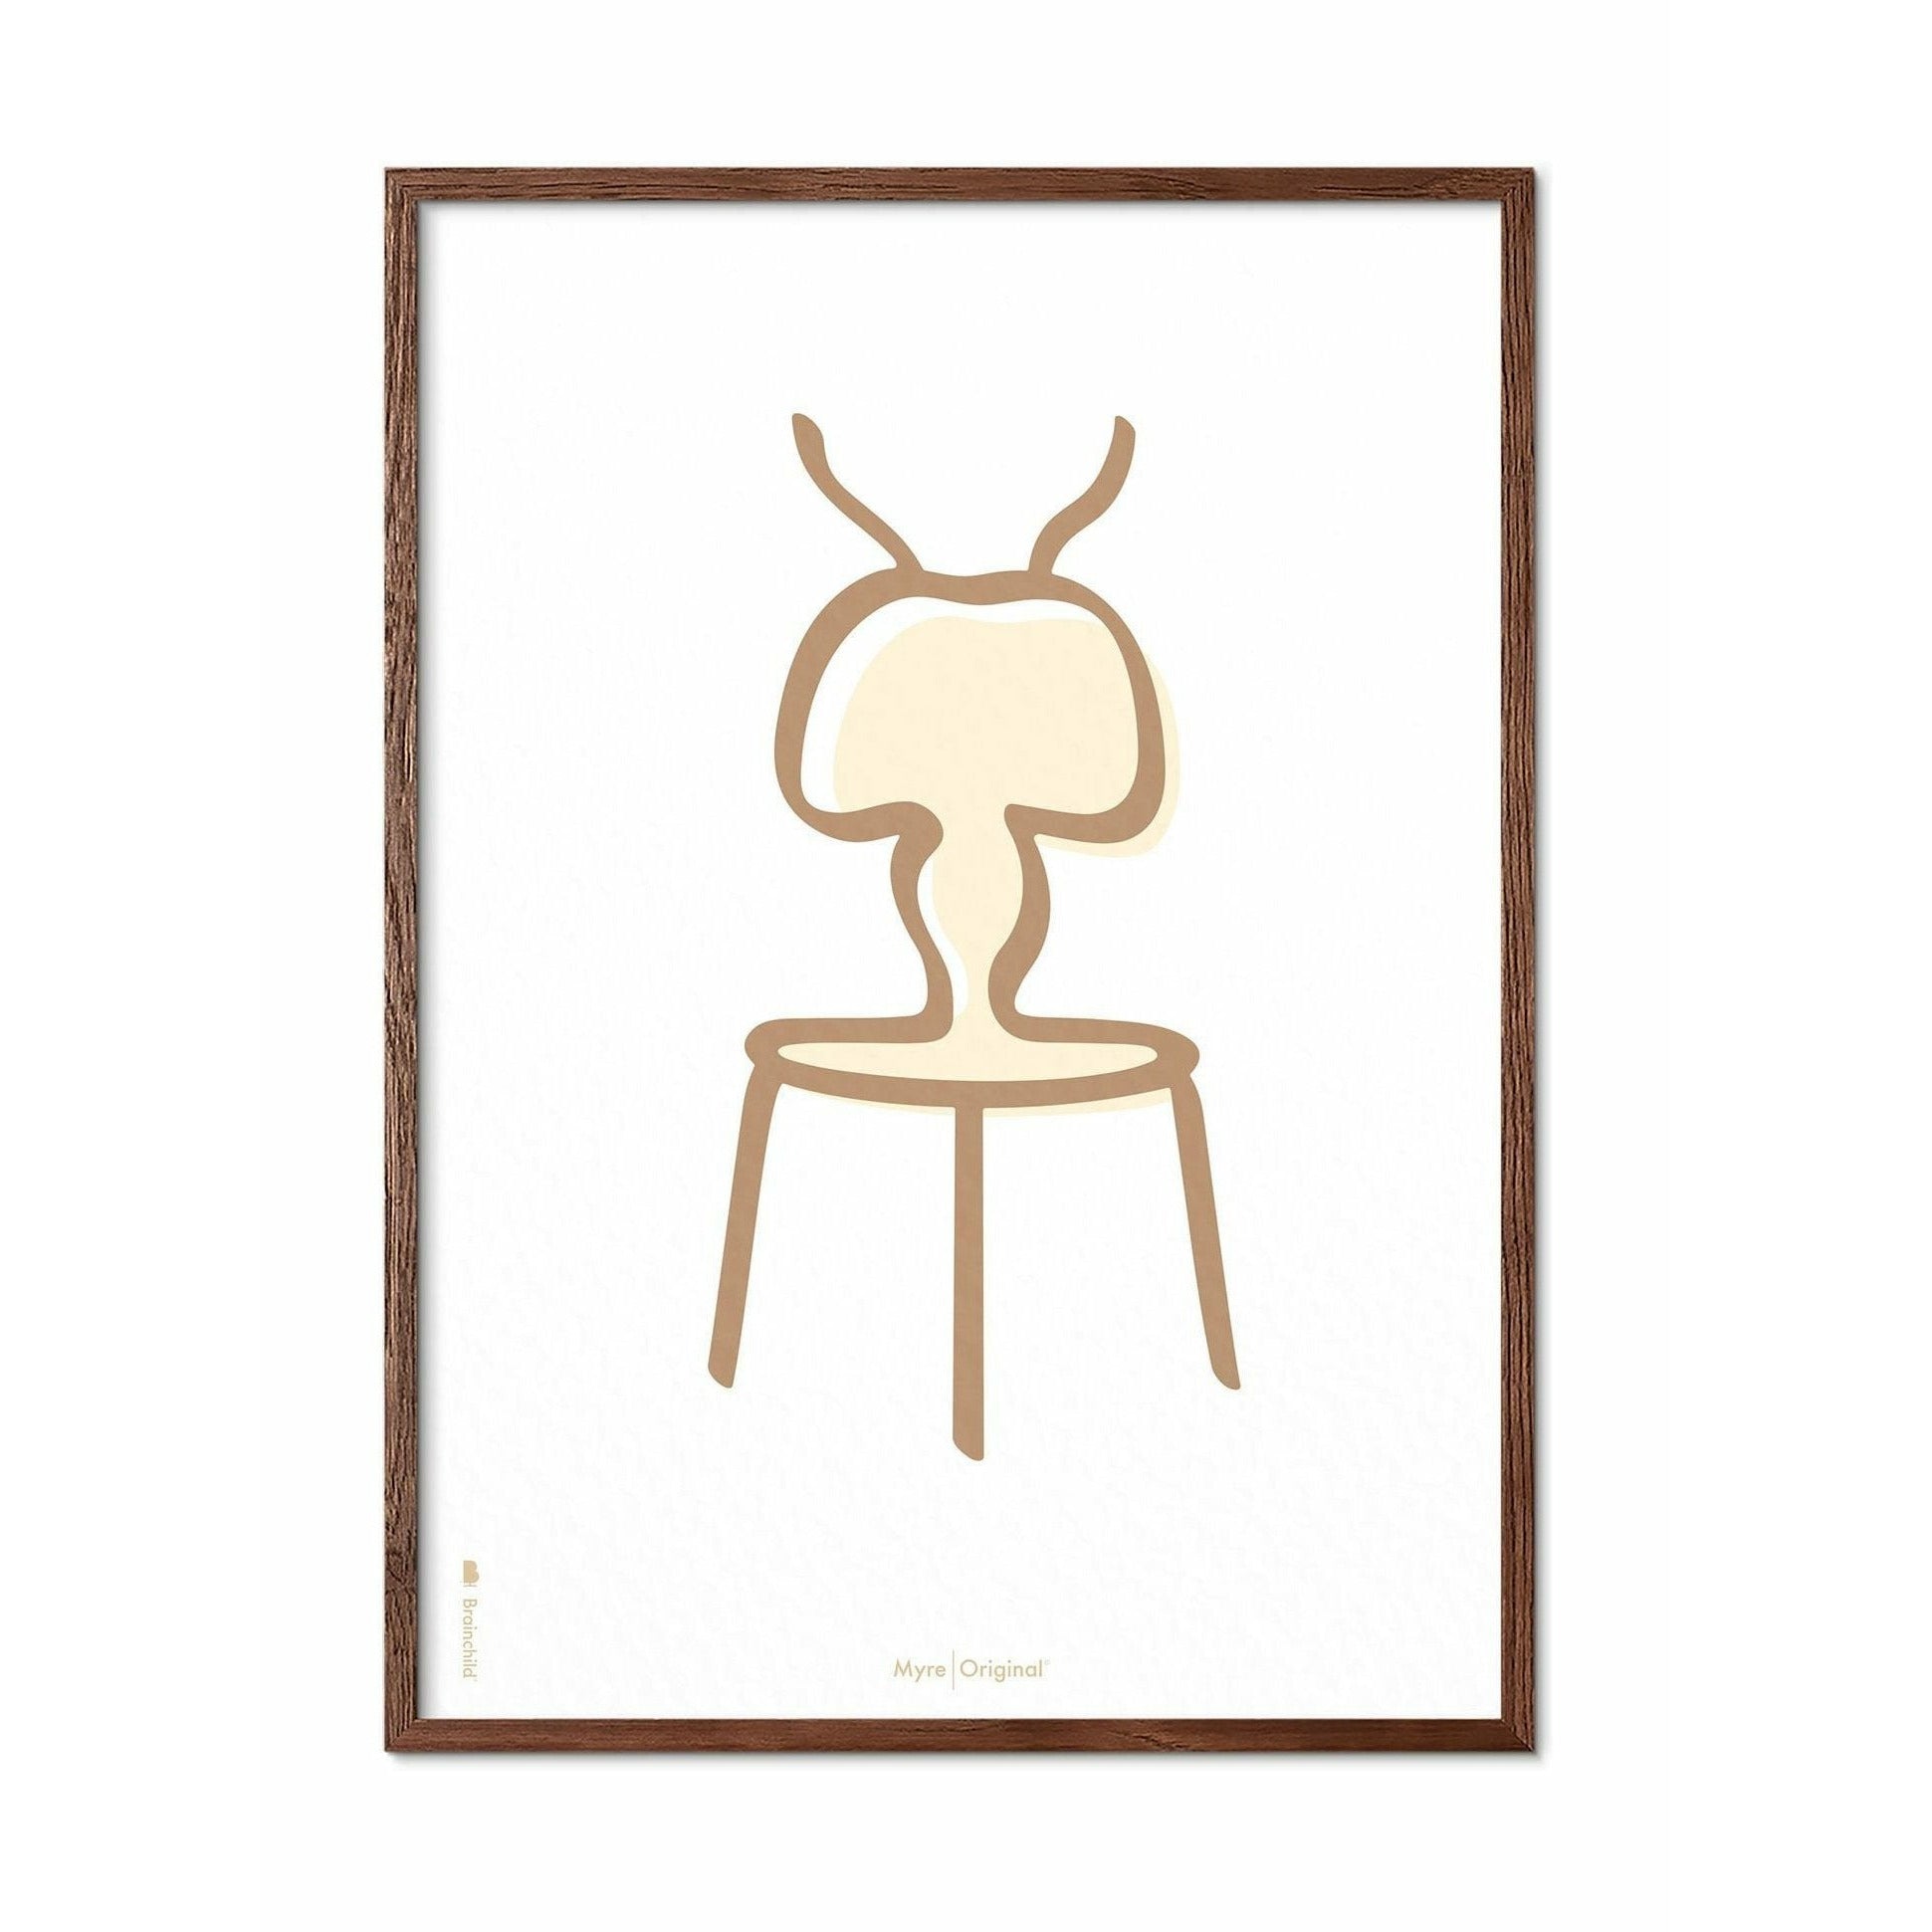 Pomysły plakat linii mrówek, rama wykonana z ciemnego drewna 30x40 cm, białe tło